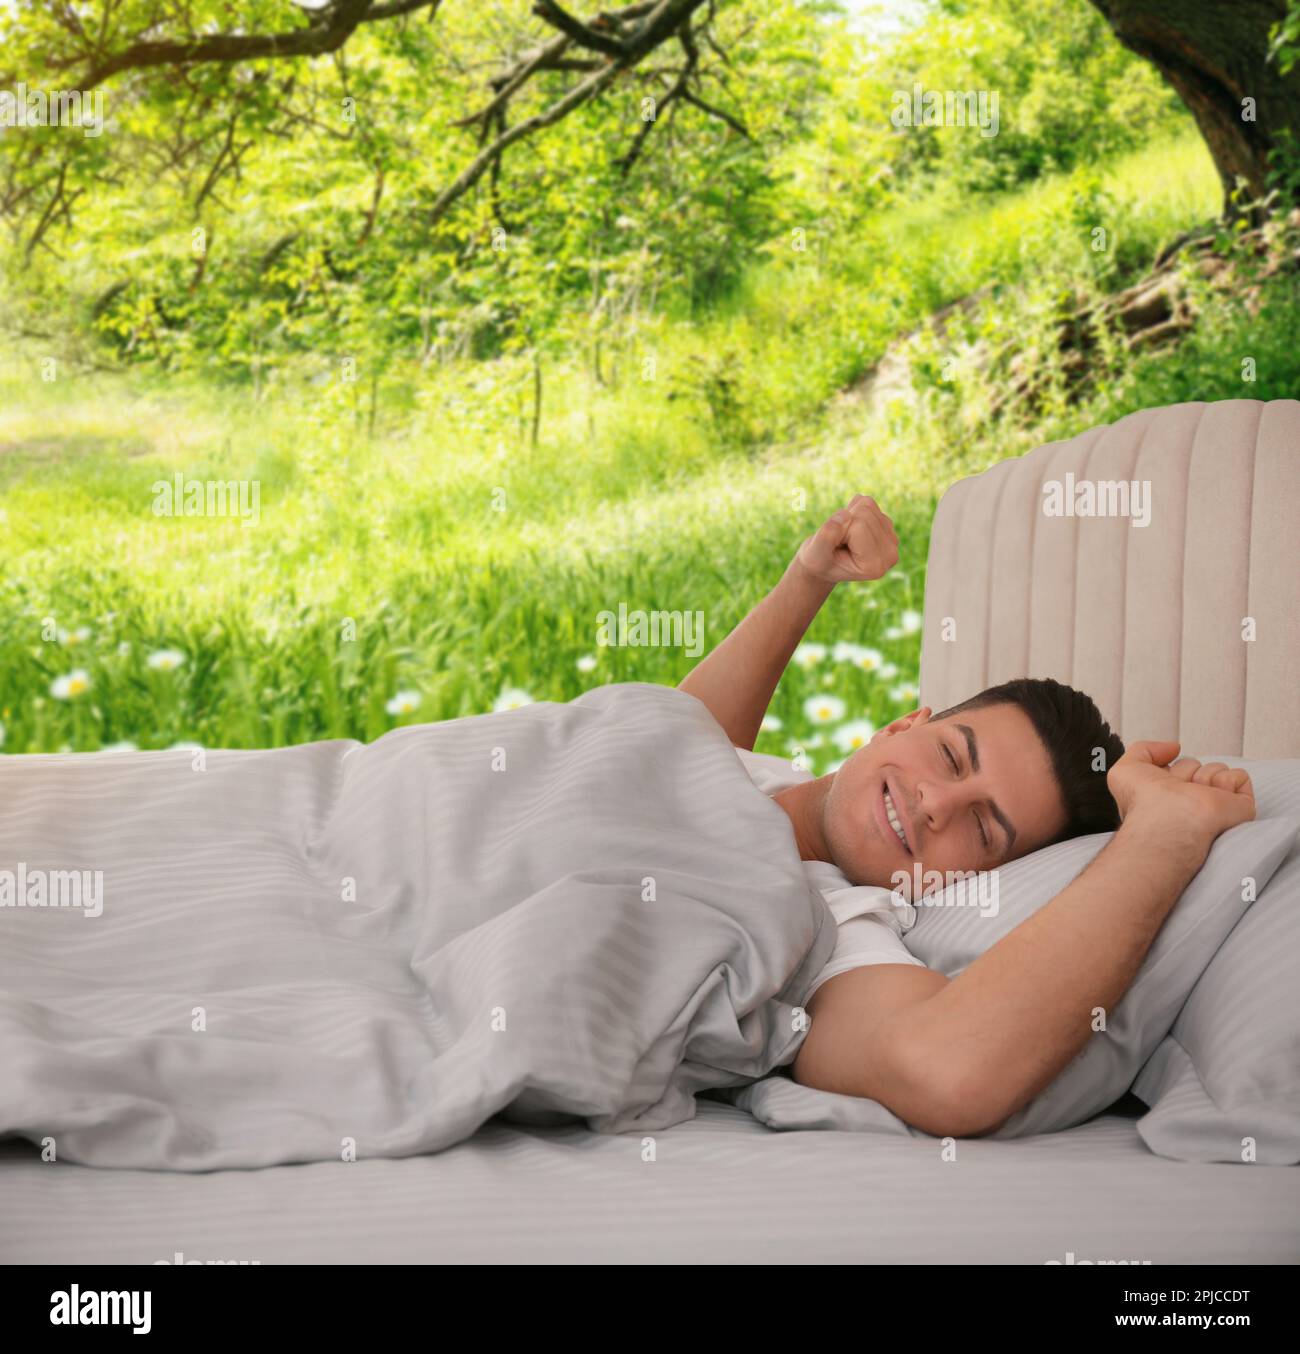 Uomo felice che si allunga nel letto e bella vista del parco sullo sfondo. Dormi bene - resta in salute Foto Stock